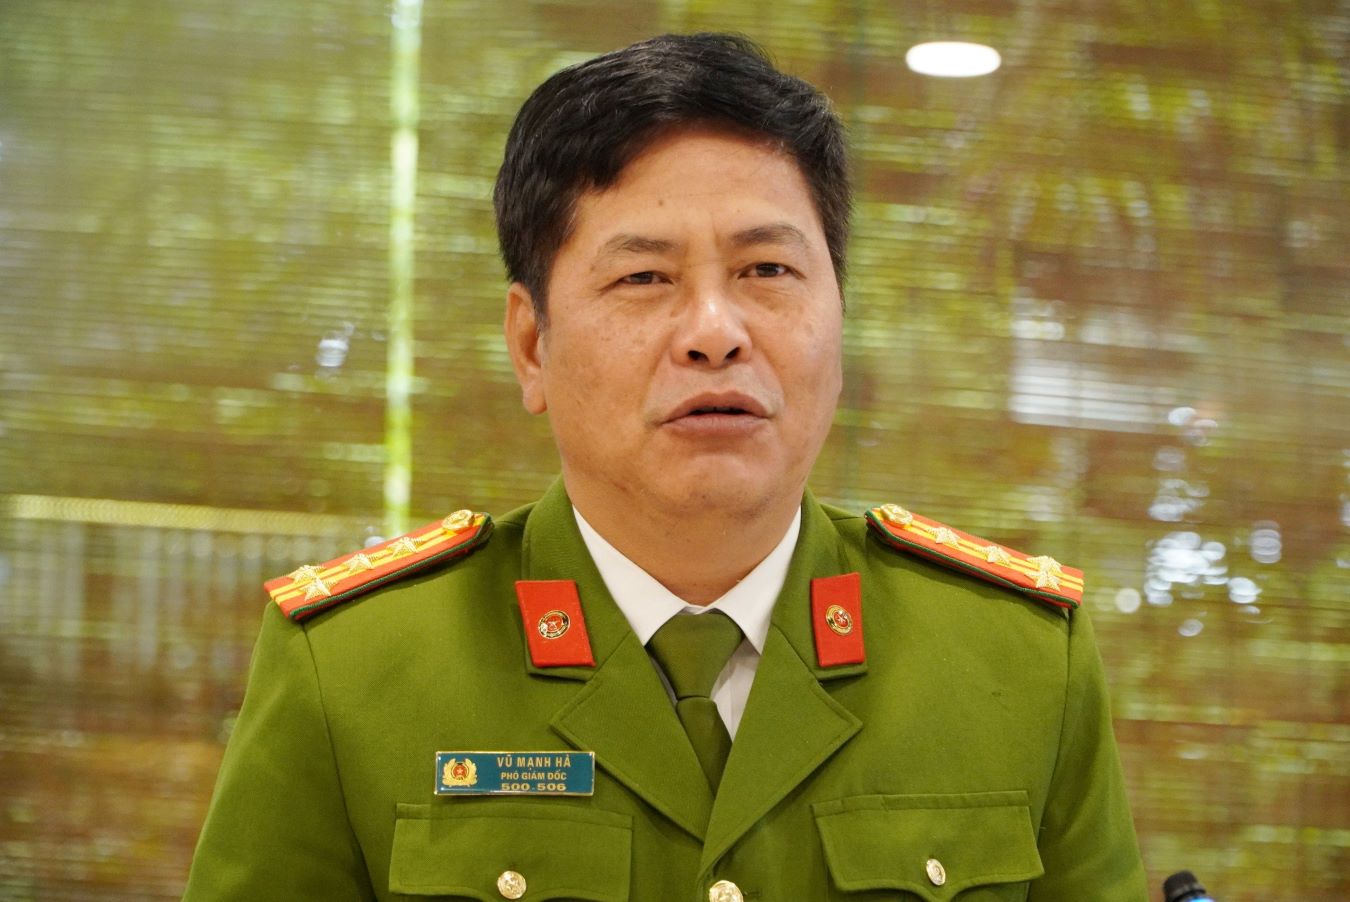 Đại tá Vũ Mạnh Hà, Phó Giám đốc Công an tỉnh Thái Bình. Ảnh: Nam Hồng